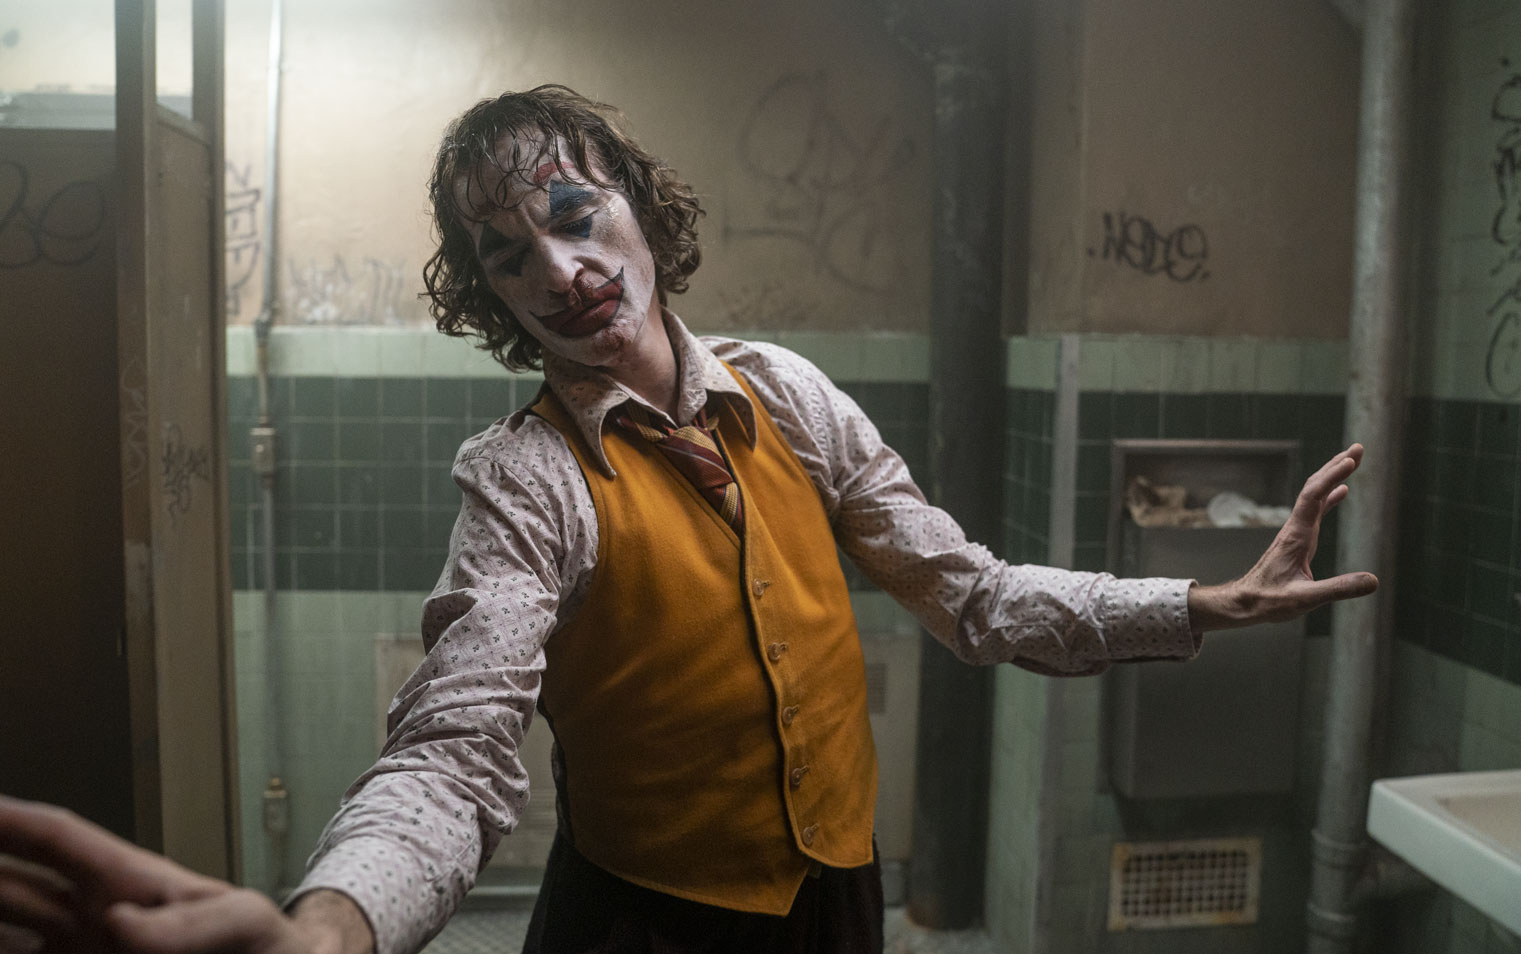 Film still from Joker of Arthur Fleck (Joaquin Phoenix) dancing in bathroom